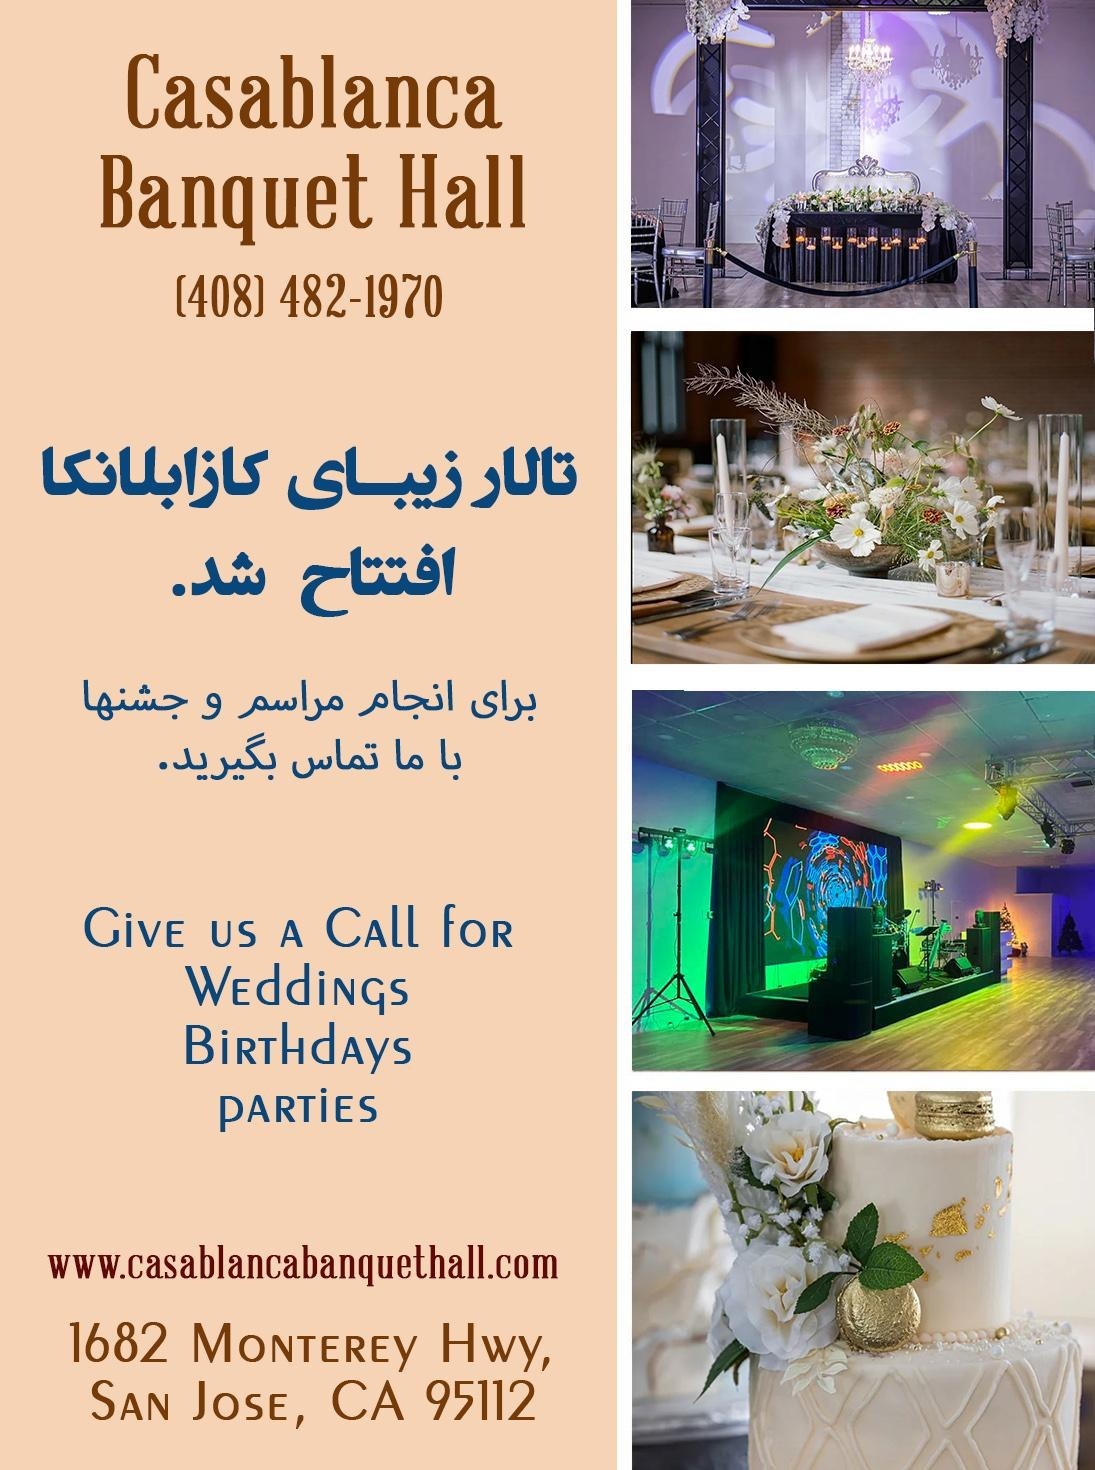 Casablanca Banquet Hall